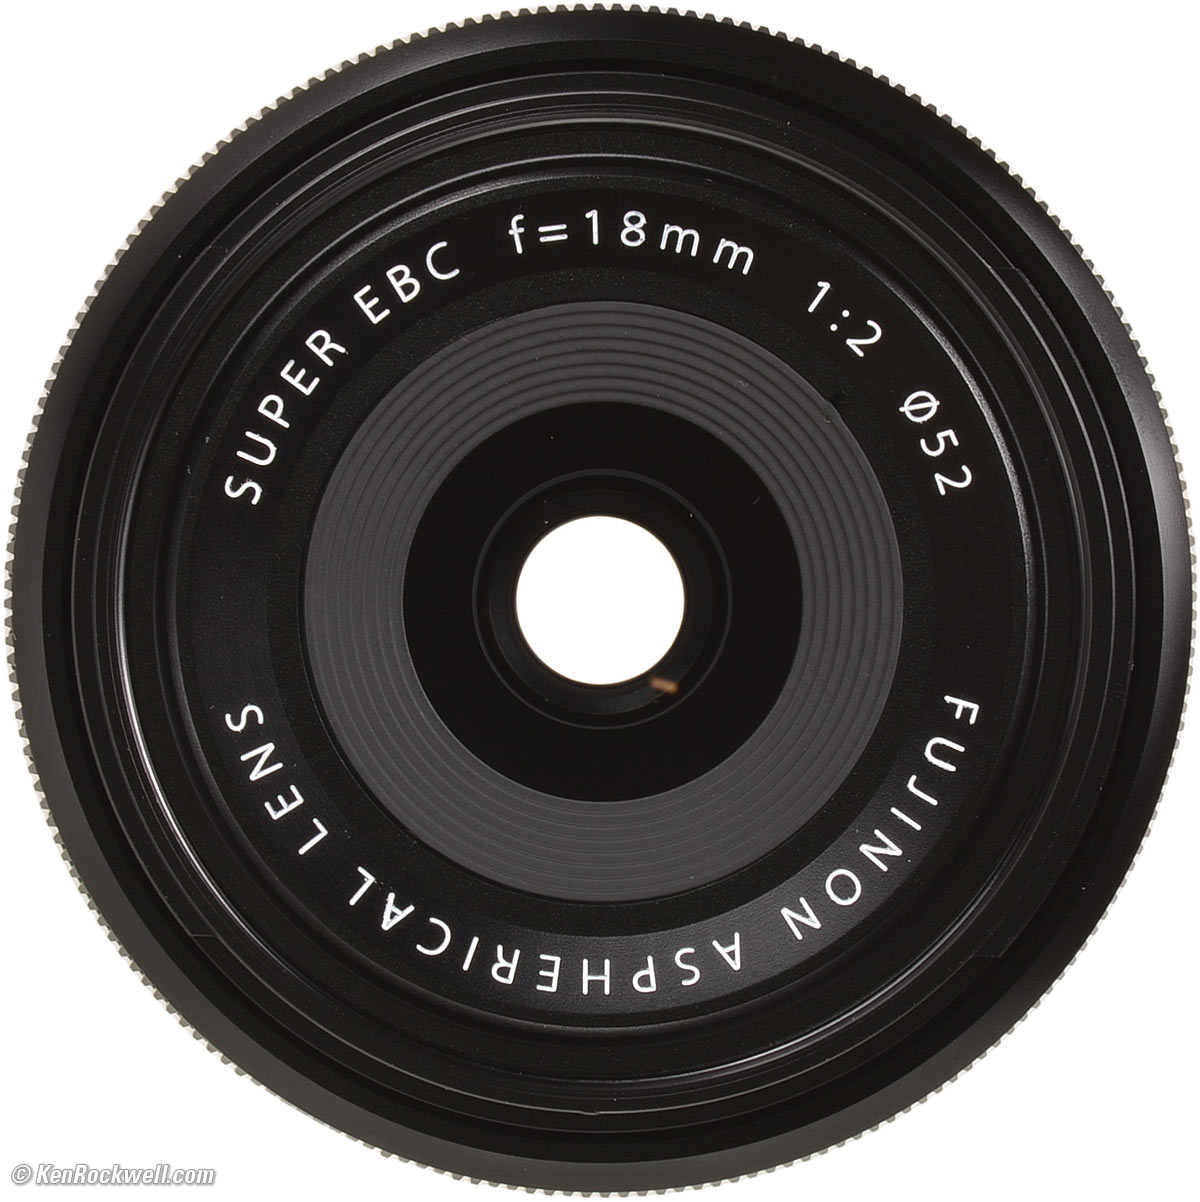 Fuji XF 18mm f/2 Review